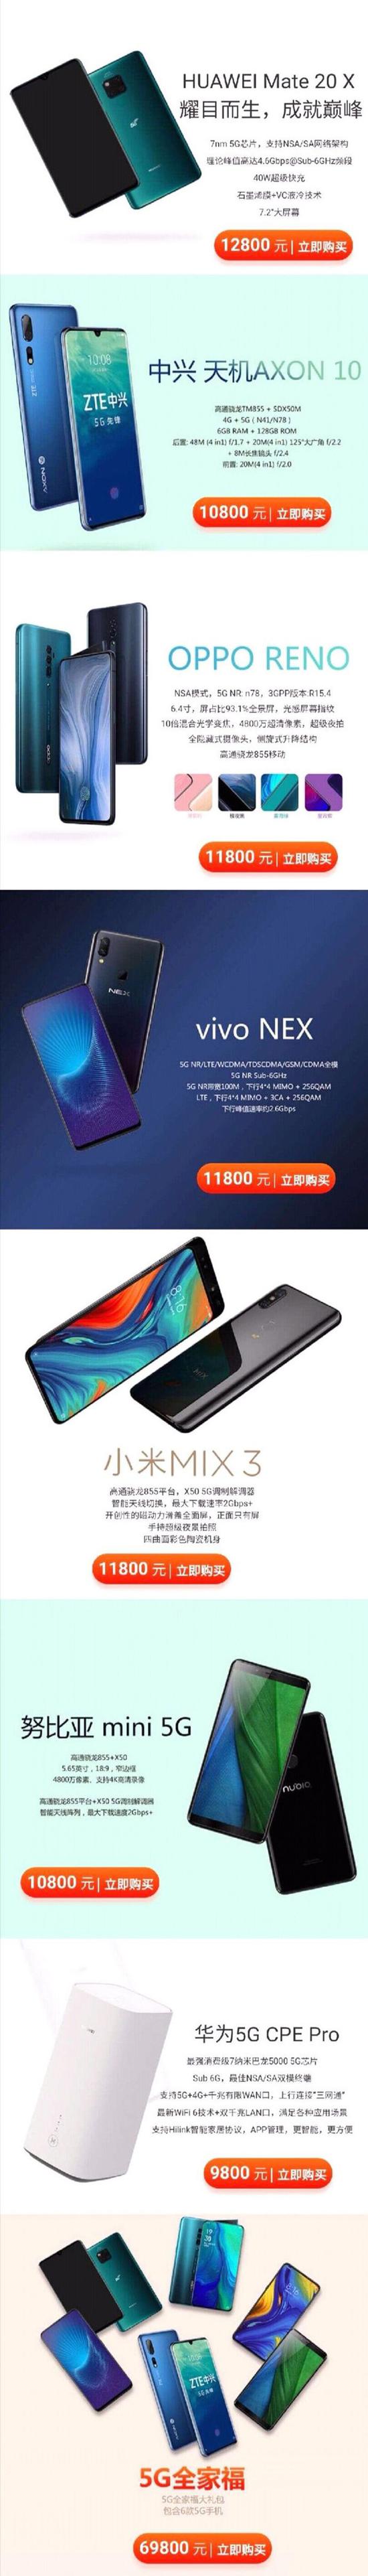 中国联通5G手机价格公布 万元手机问世